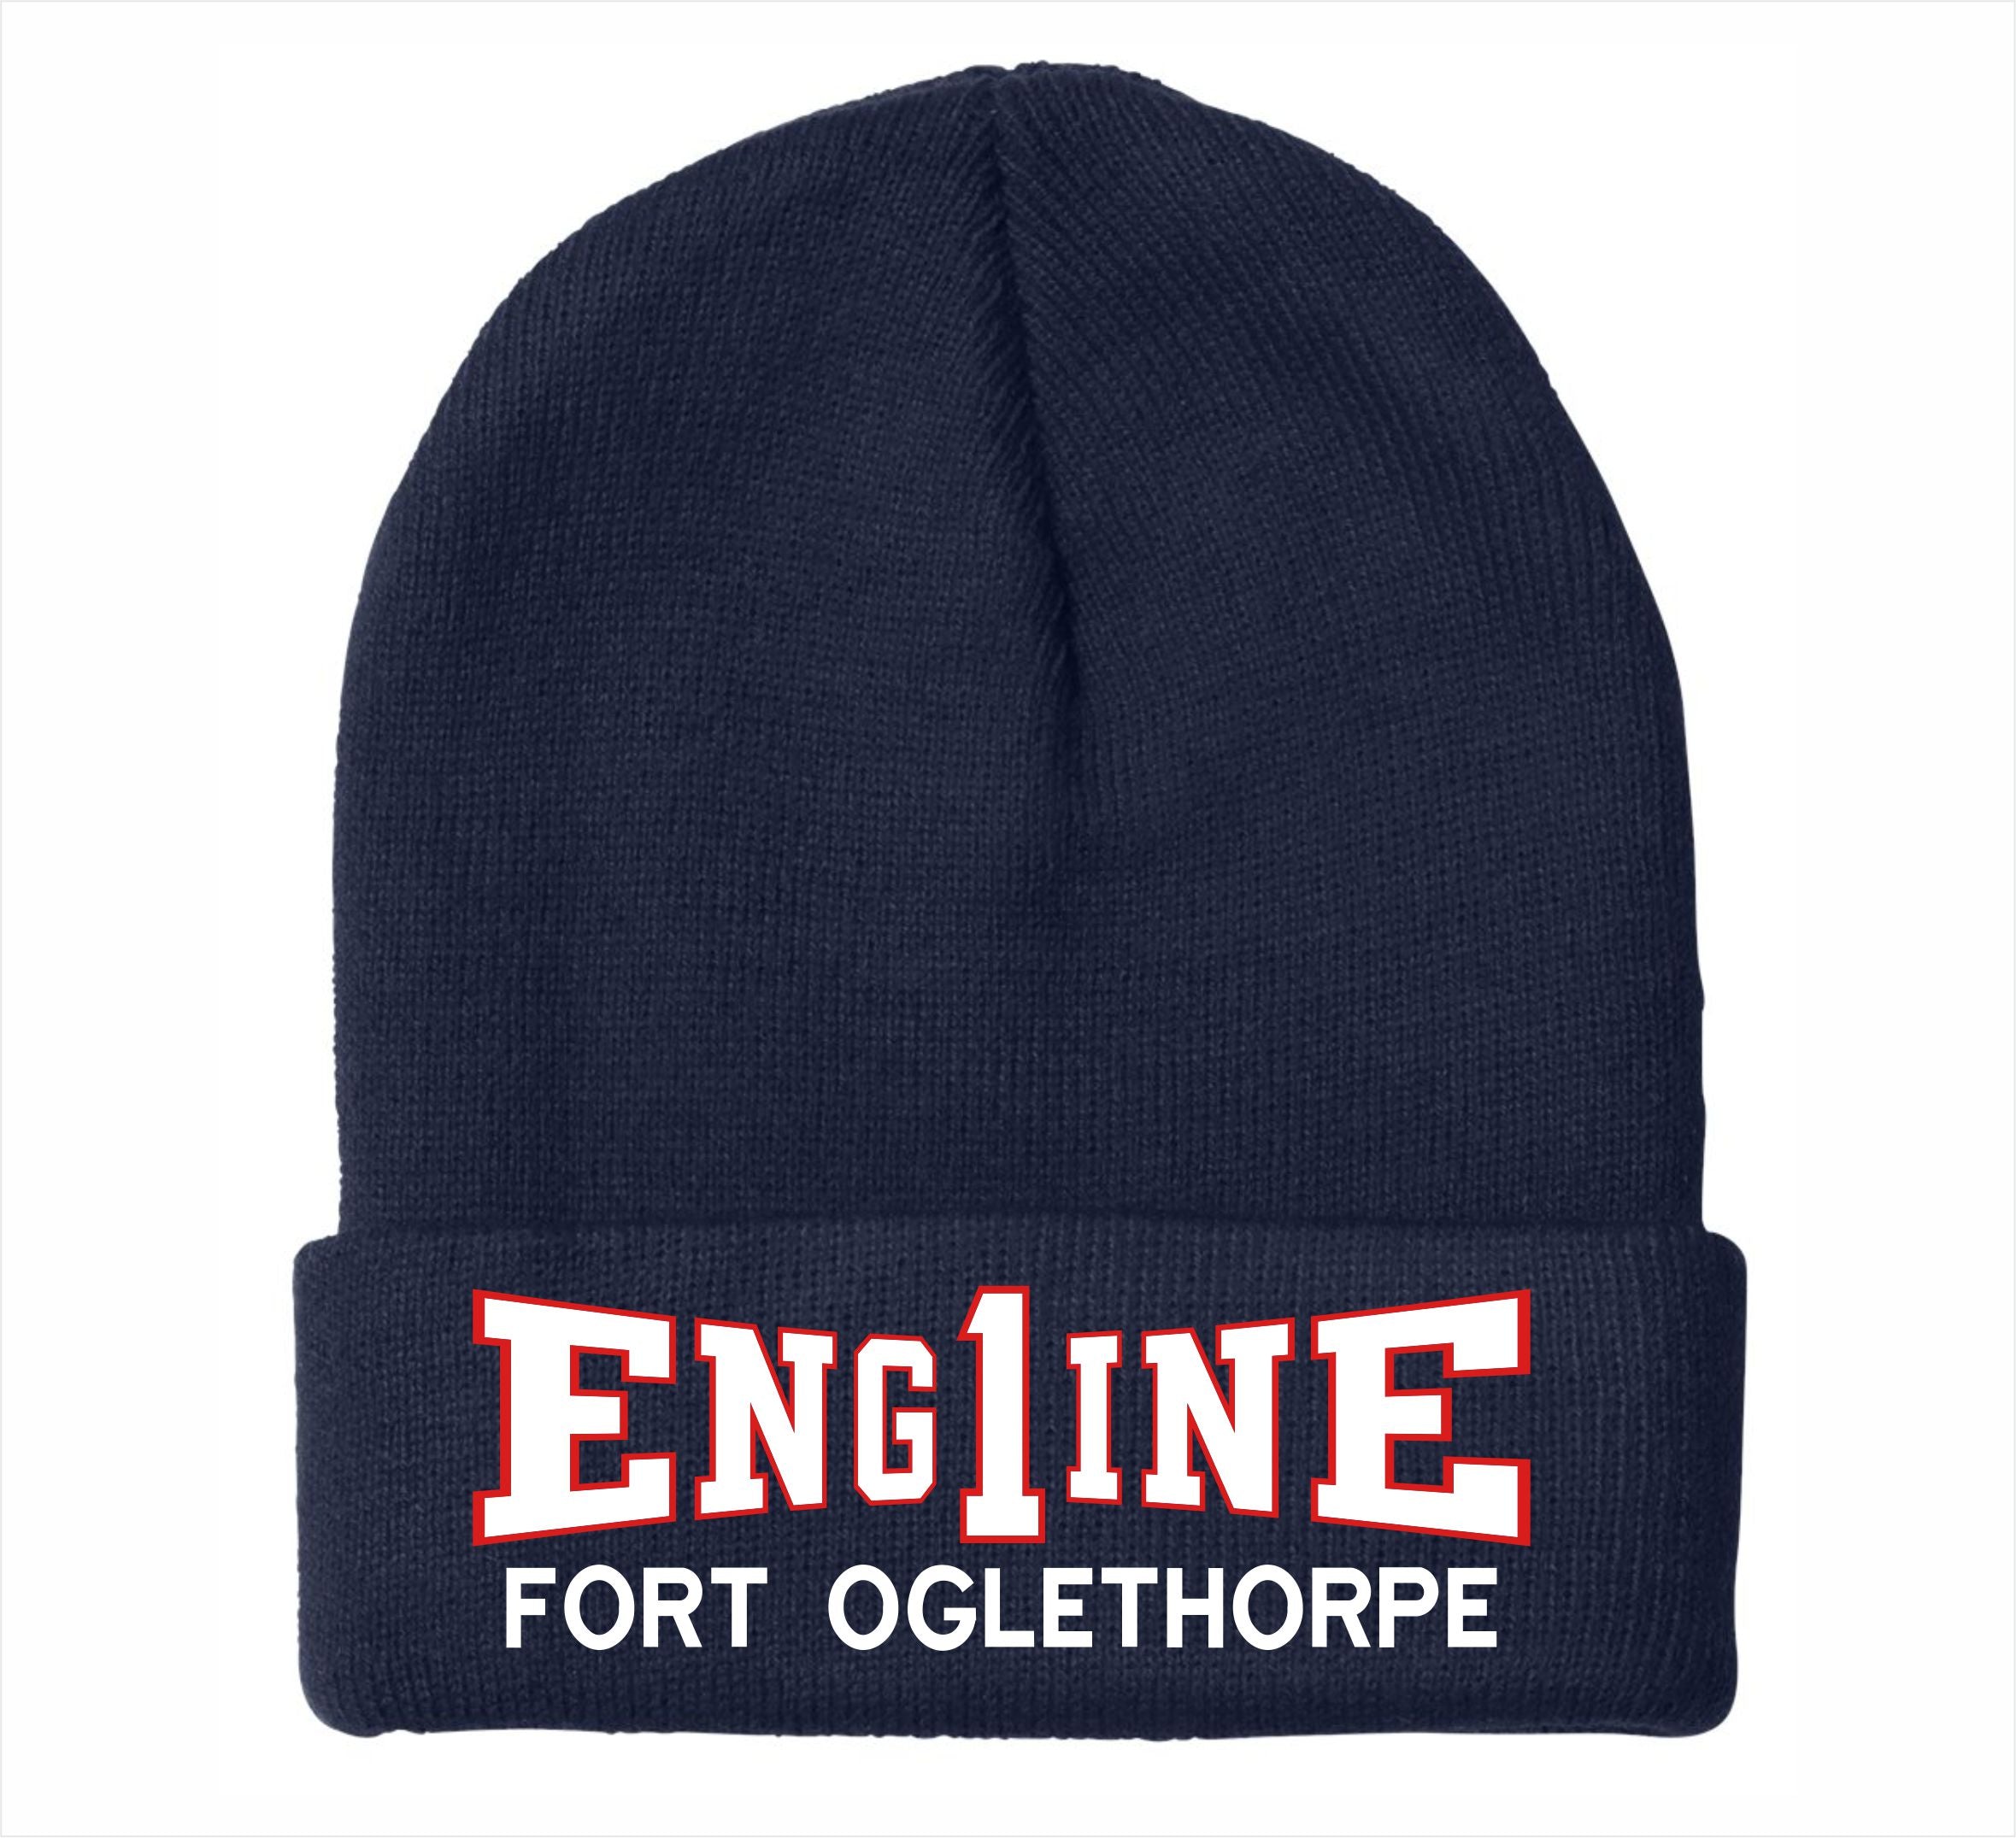 Eng1ine Fort Oglethorpe Embroidered hat